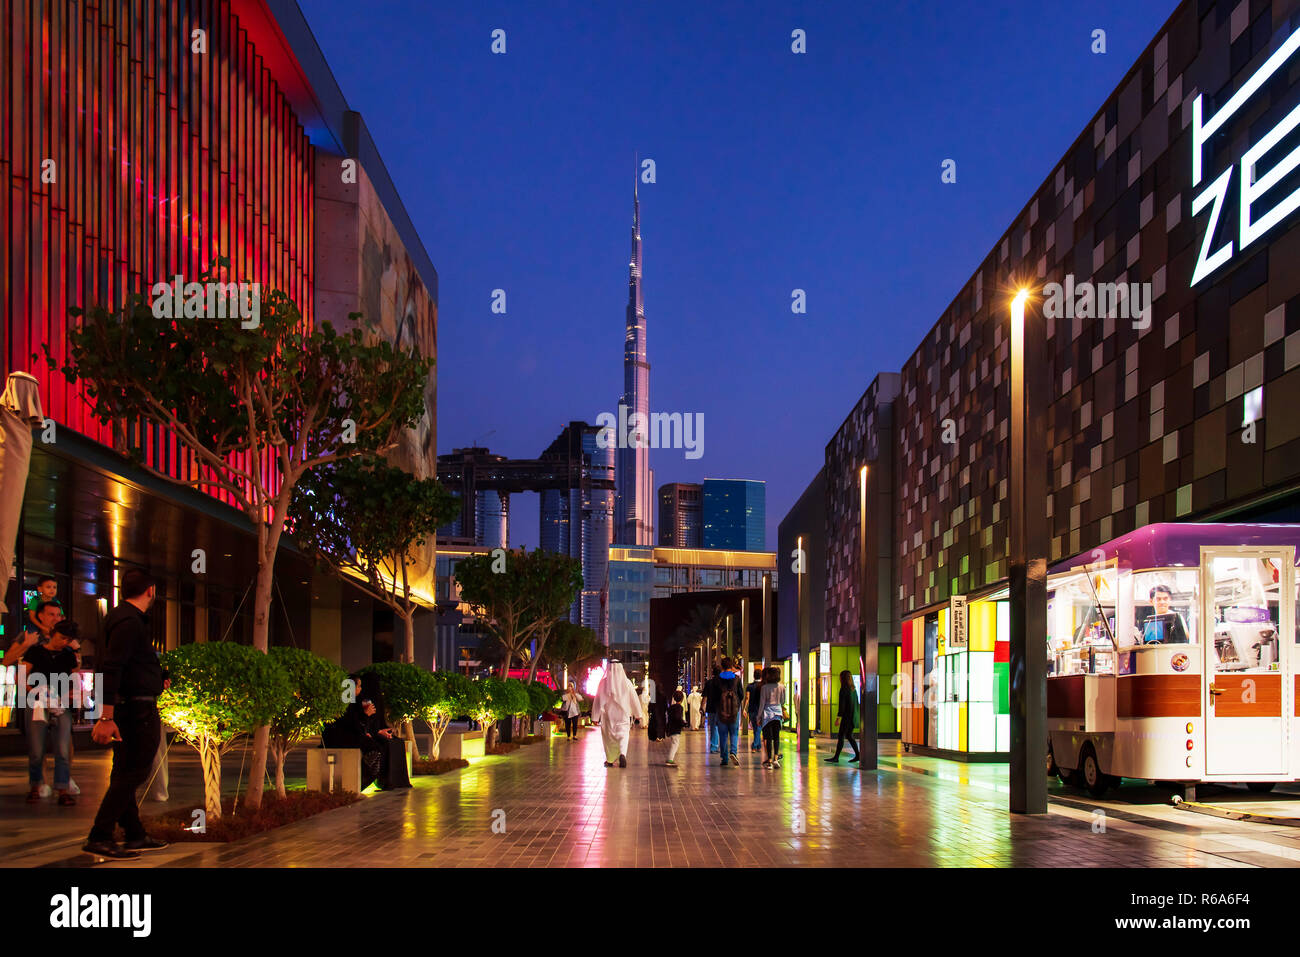 Dubai, Vereinigte Arabische Emirate - 30. November 2018: Dubai Stadt in der Nacht, Reisen und Freizeit Veranstaltungsort zu Fuß in Dubai in der Innenstadt mit vielen Cafés und Restaurants. Stockfoto